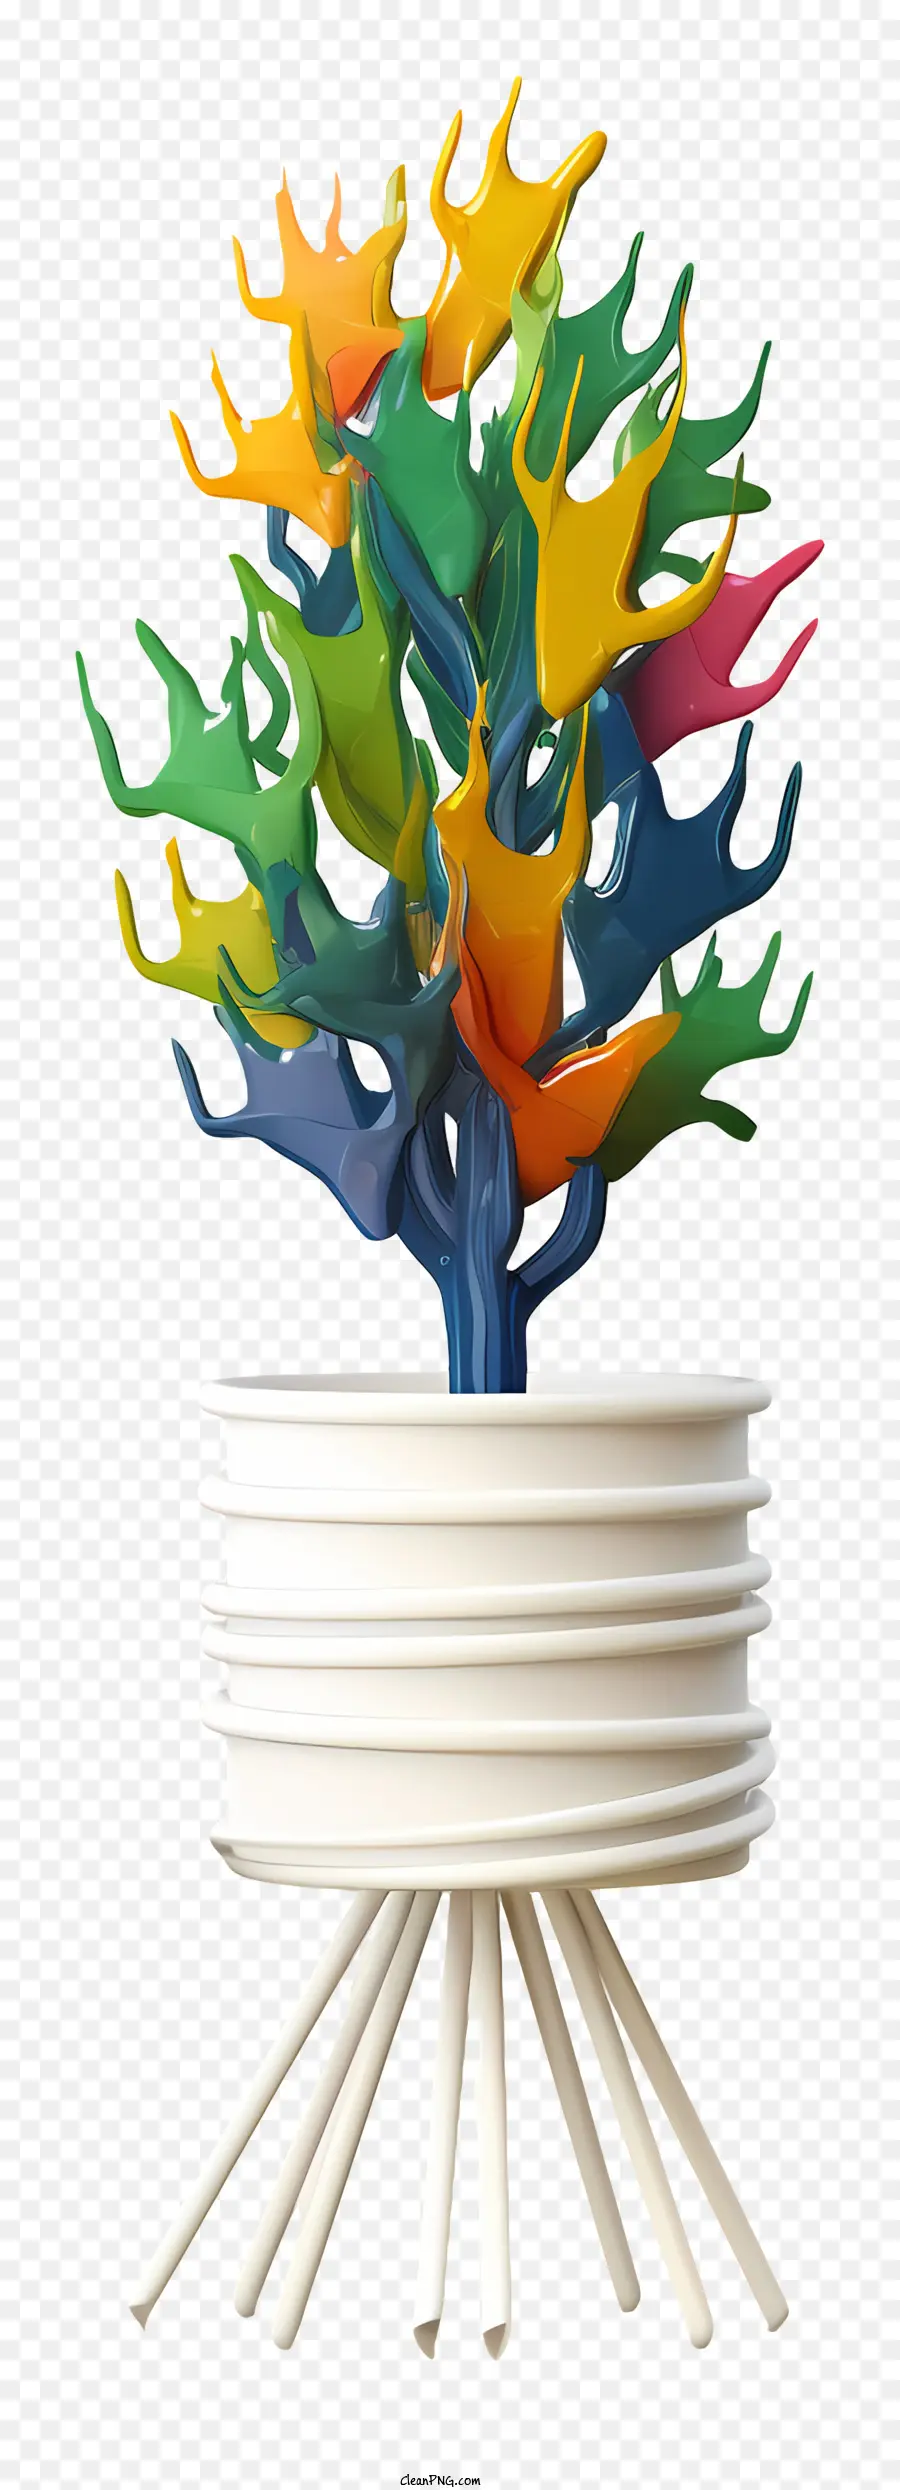 farbenfrohe Baum mehrfarbige Blätter Metallstangen weiße Teller weiße Tassen - Buntes Baum auf Metallstangen mit weißen Tassen